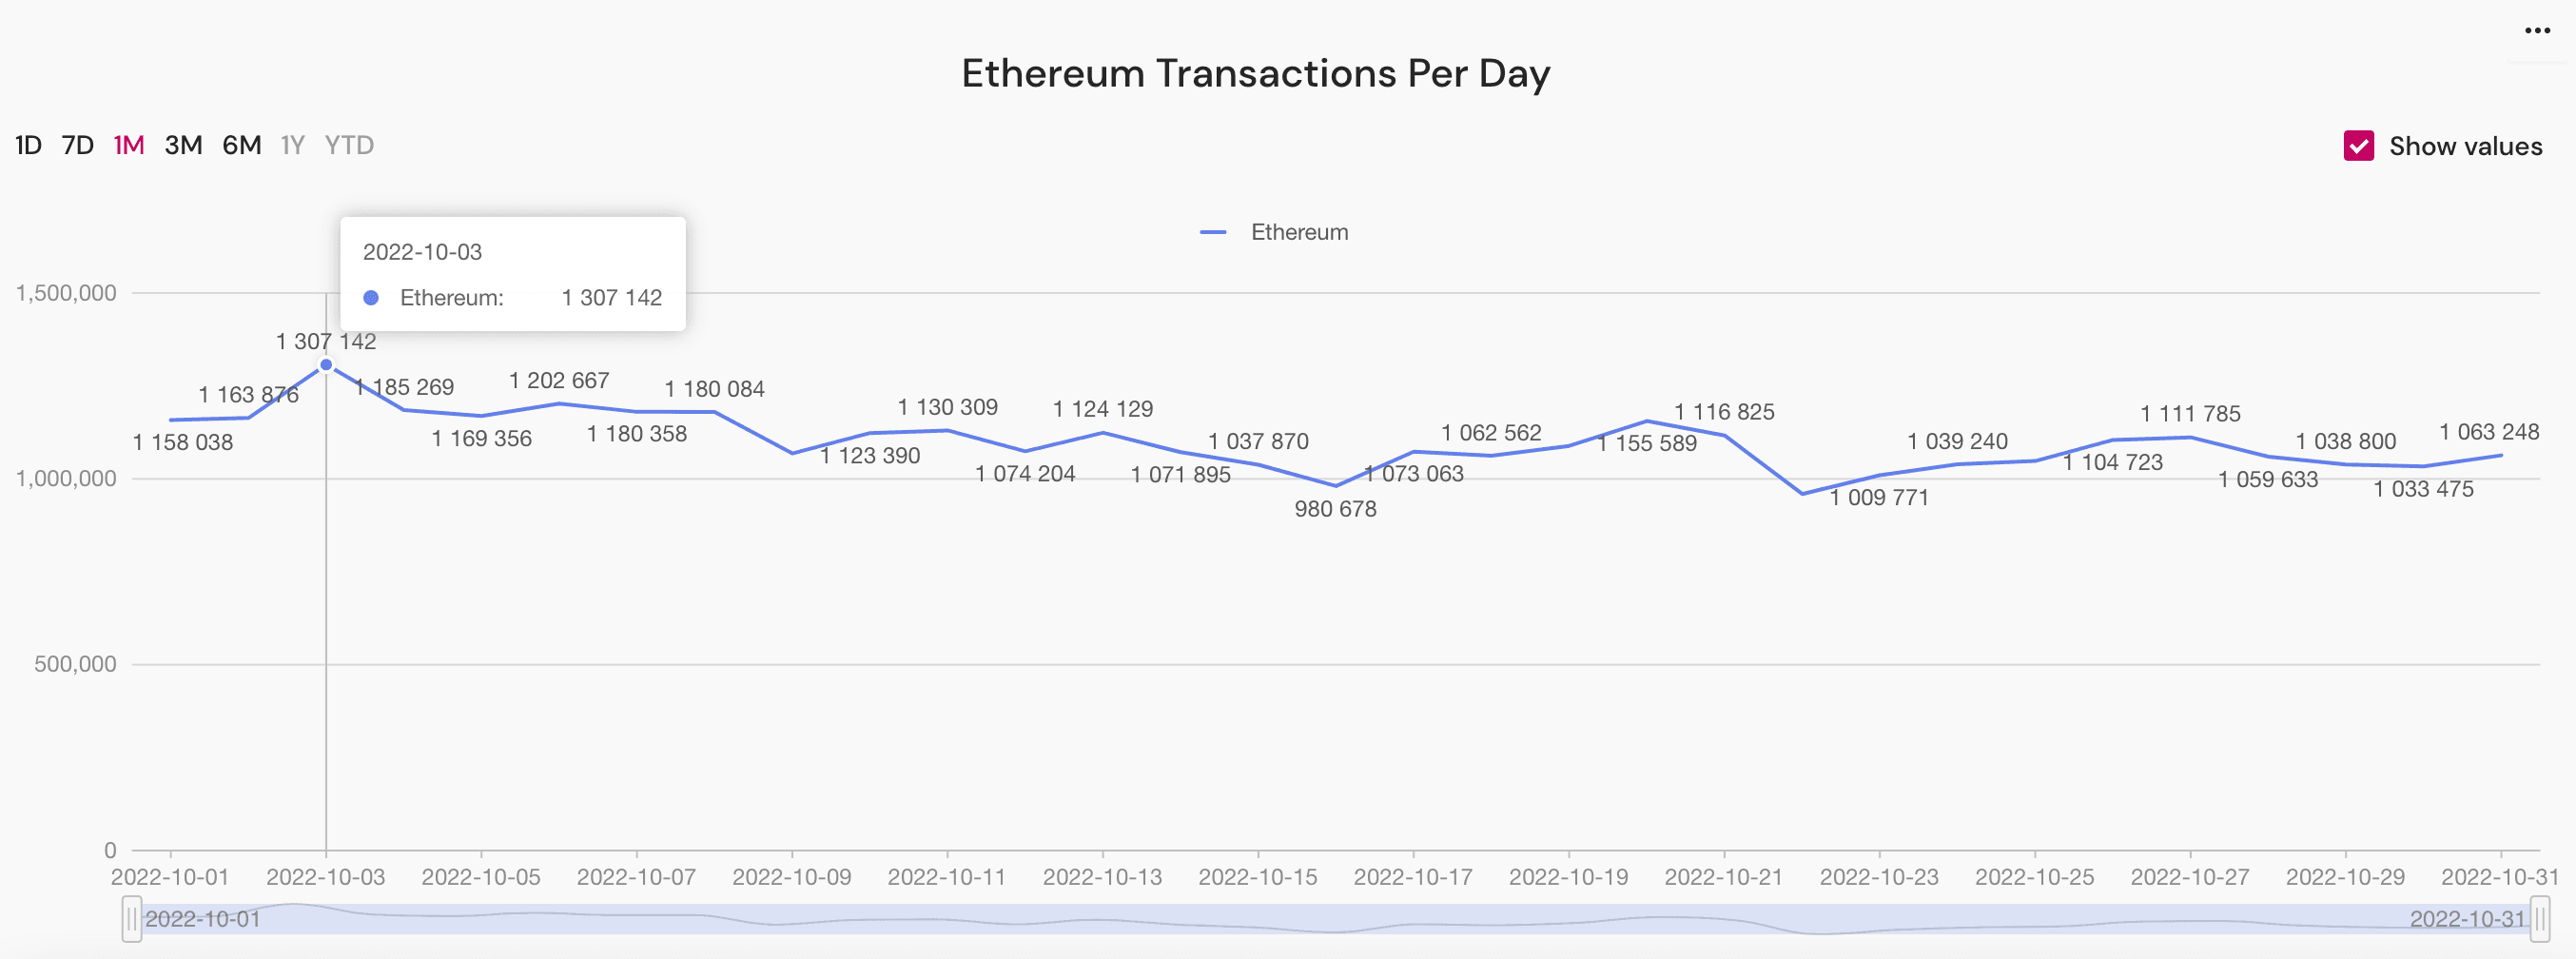 ethereum transactions peak, October 2022